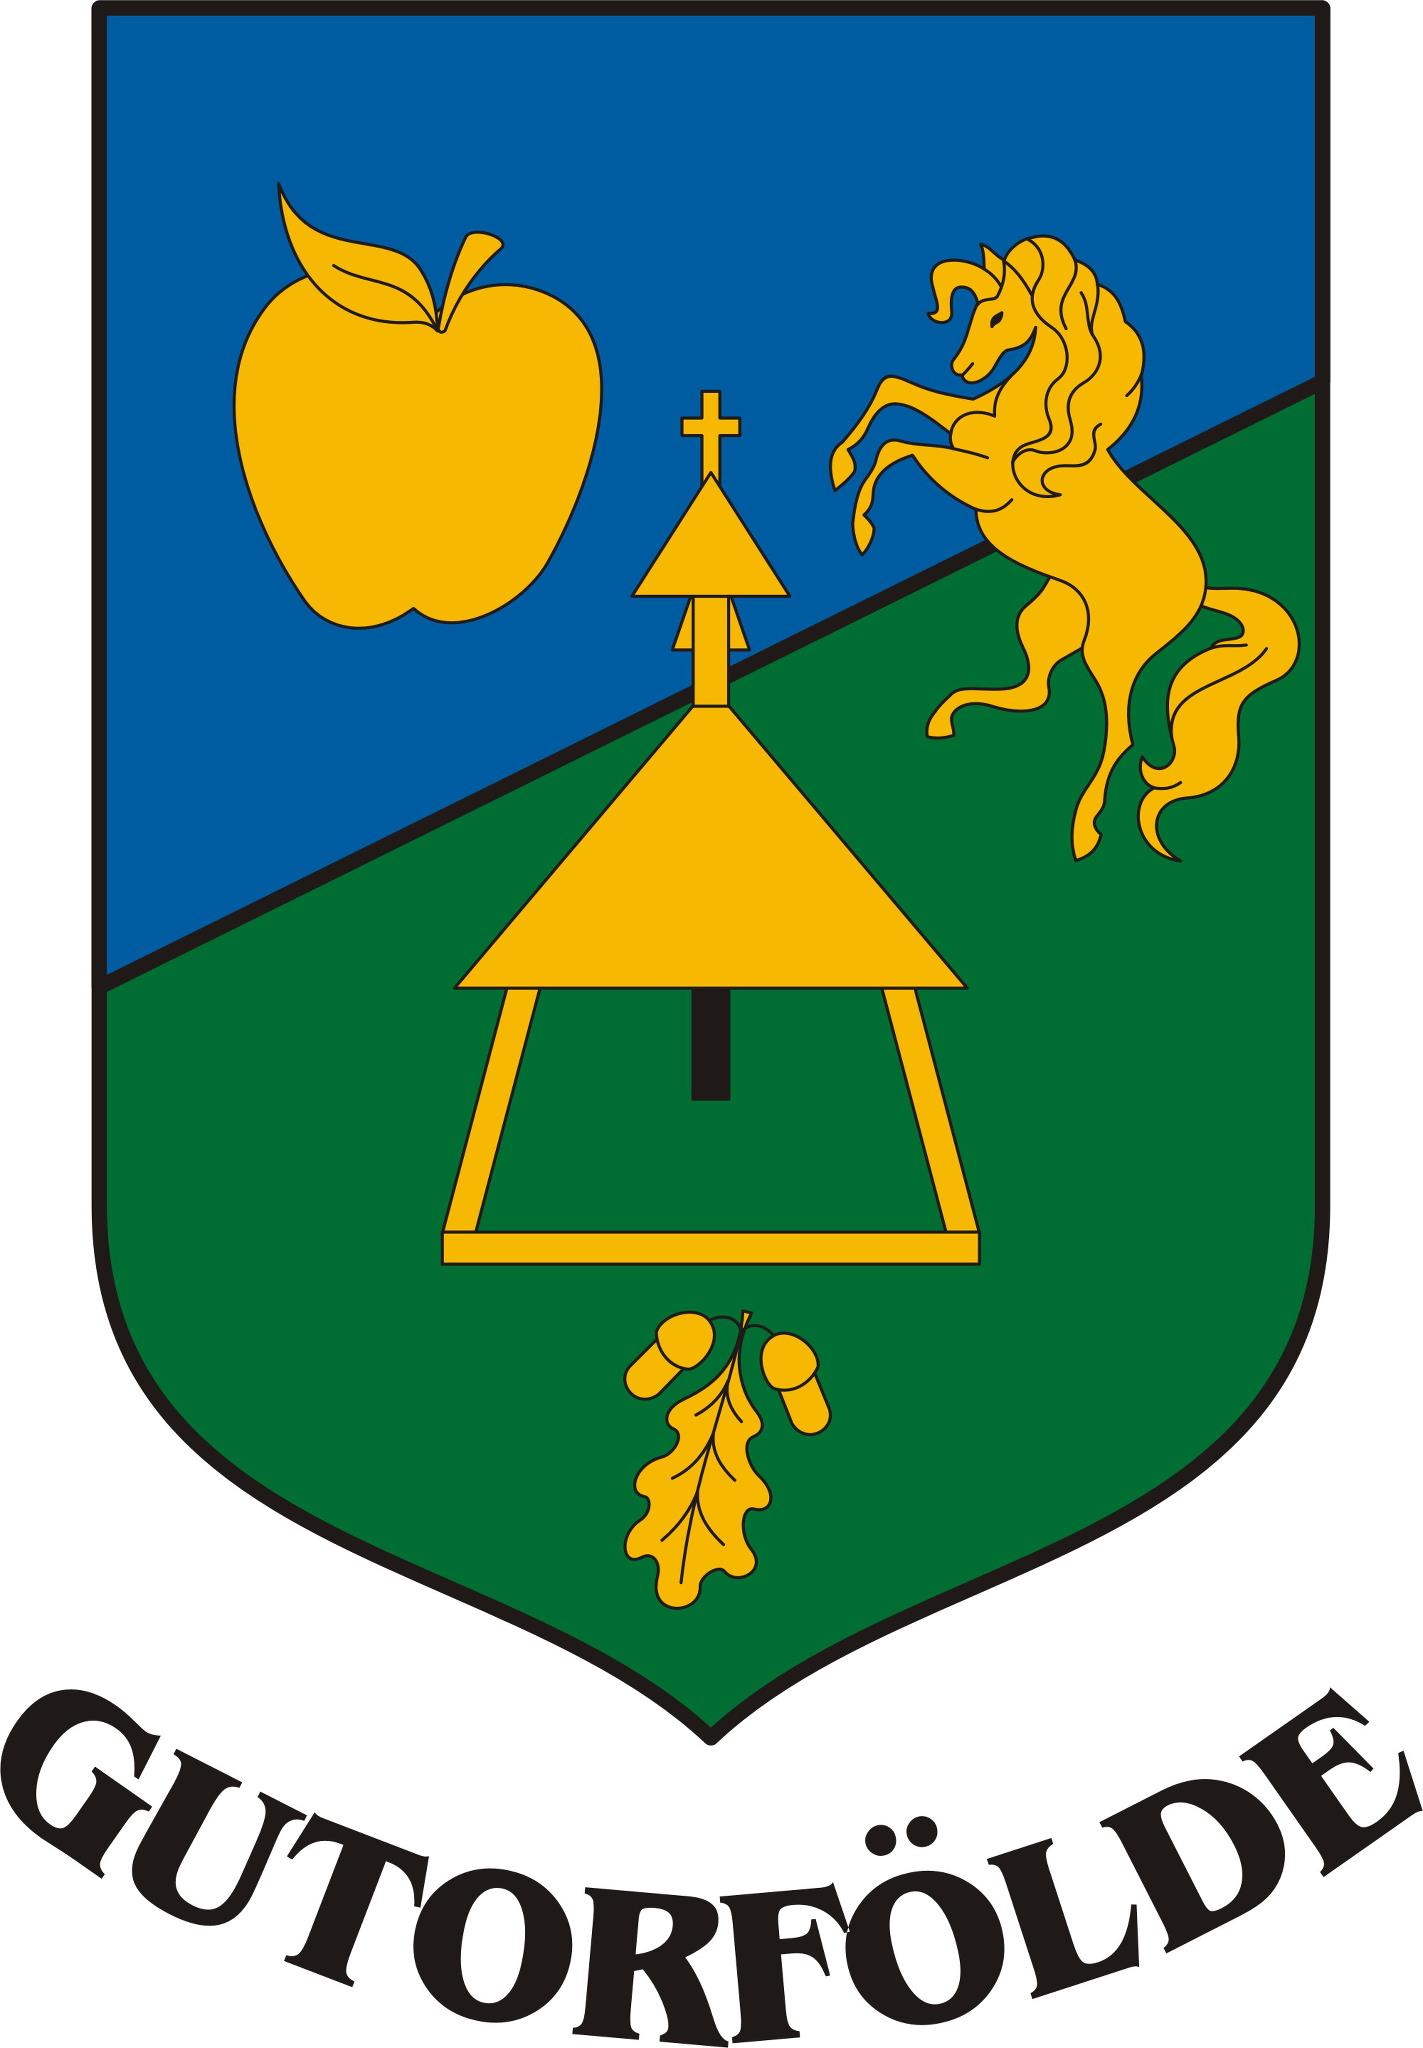 Wappen Sportklub Gutorfölde